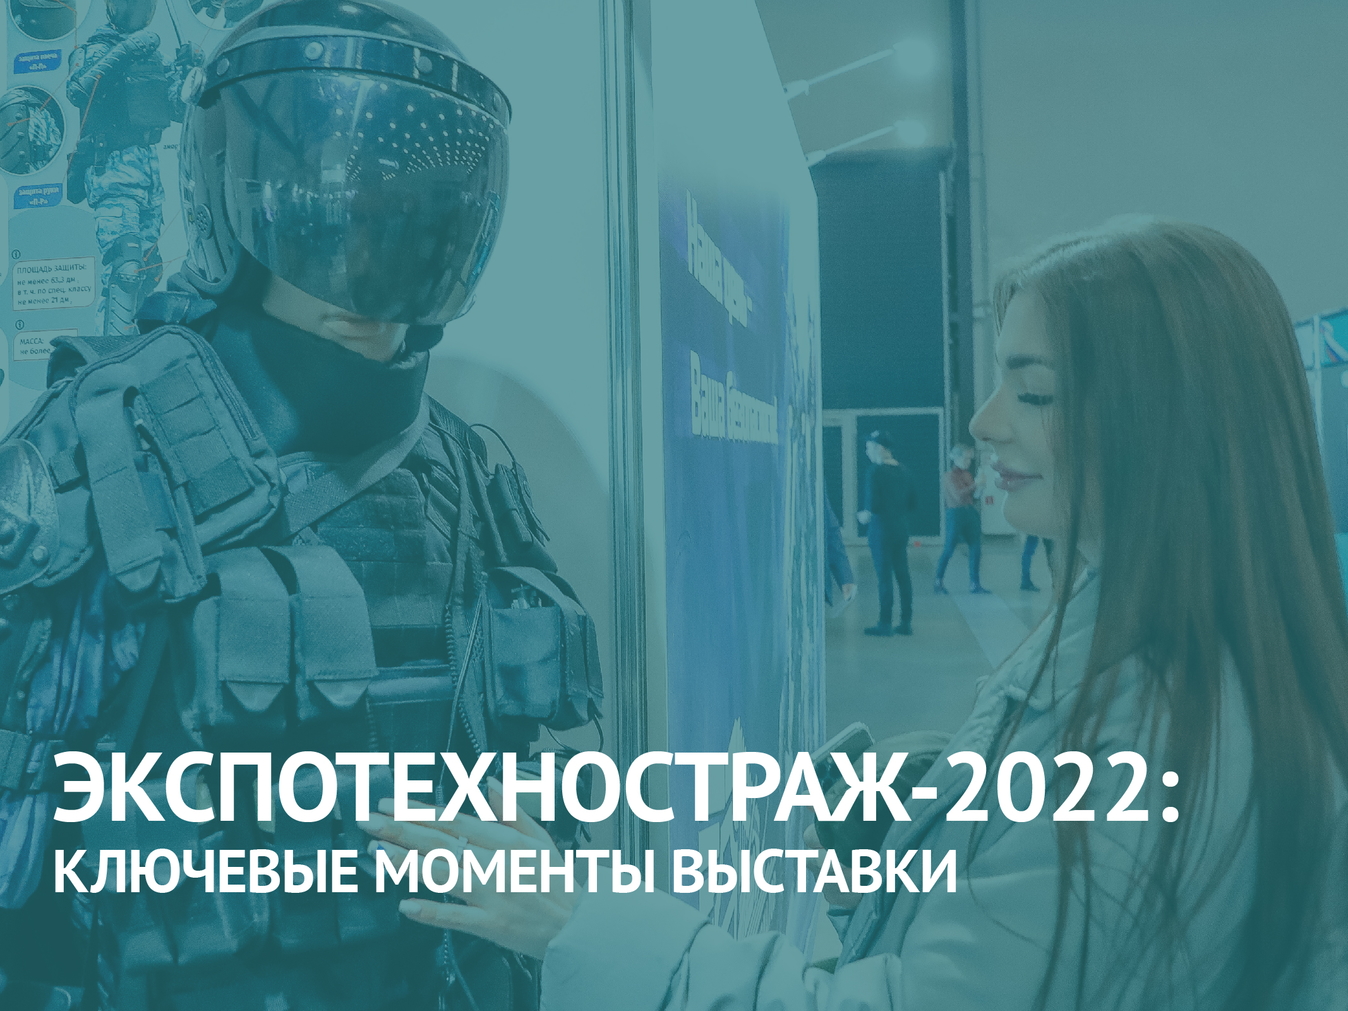 Международная выставка “ЭКСПОТЕХНОСТРАЖ-2022”